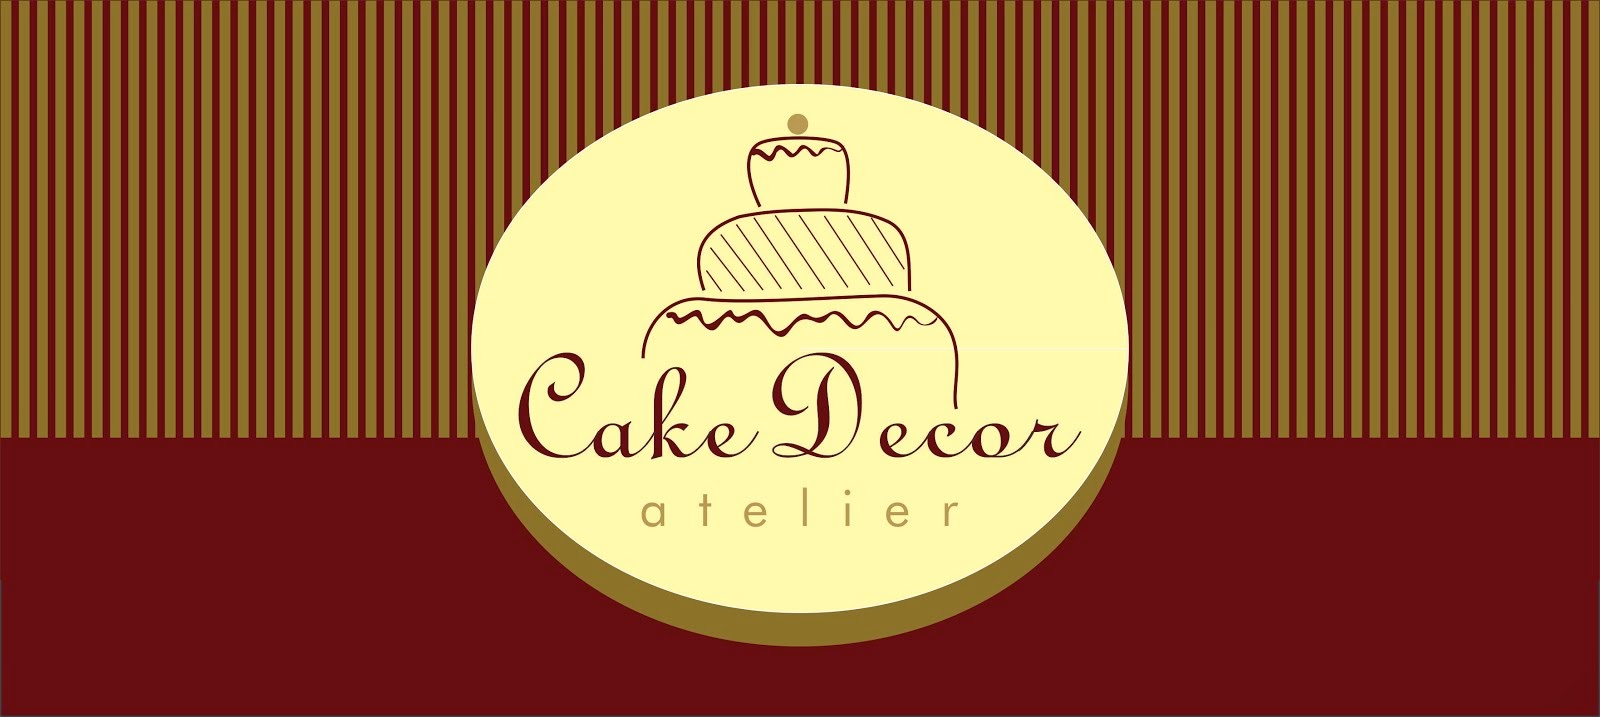 Cake Decor - Atelier